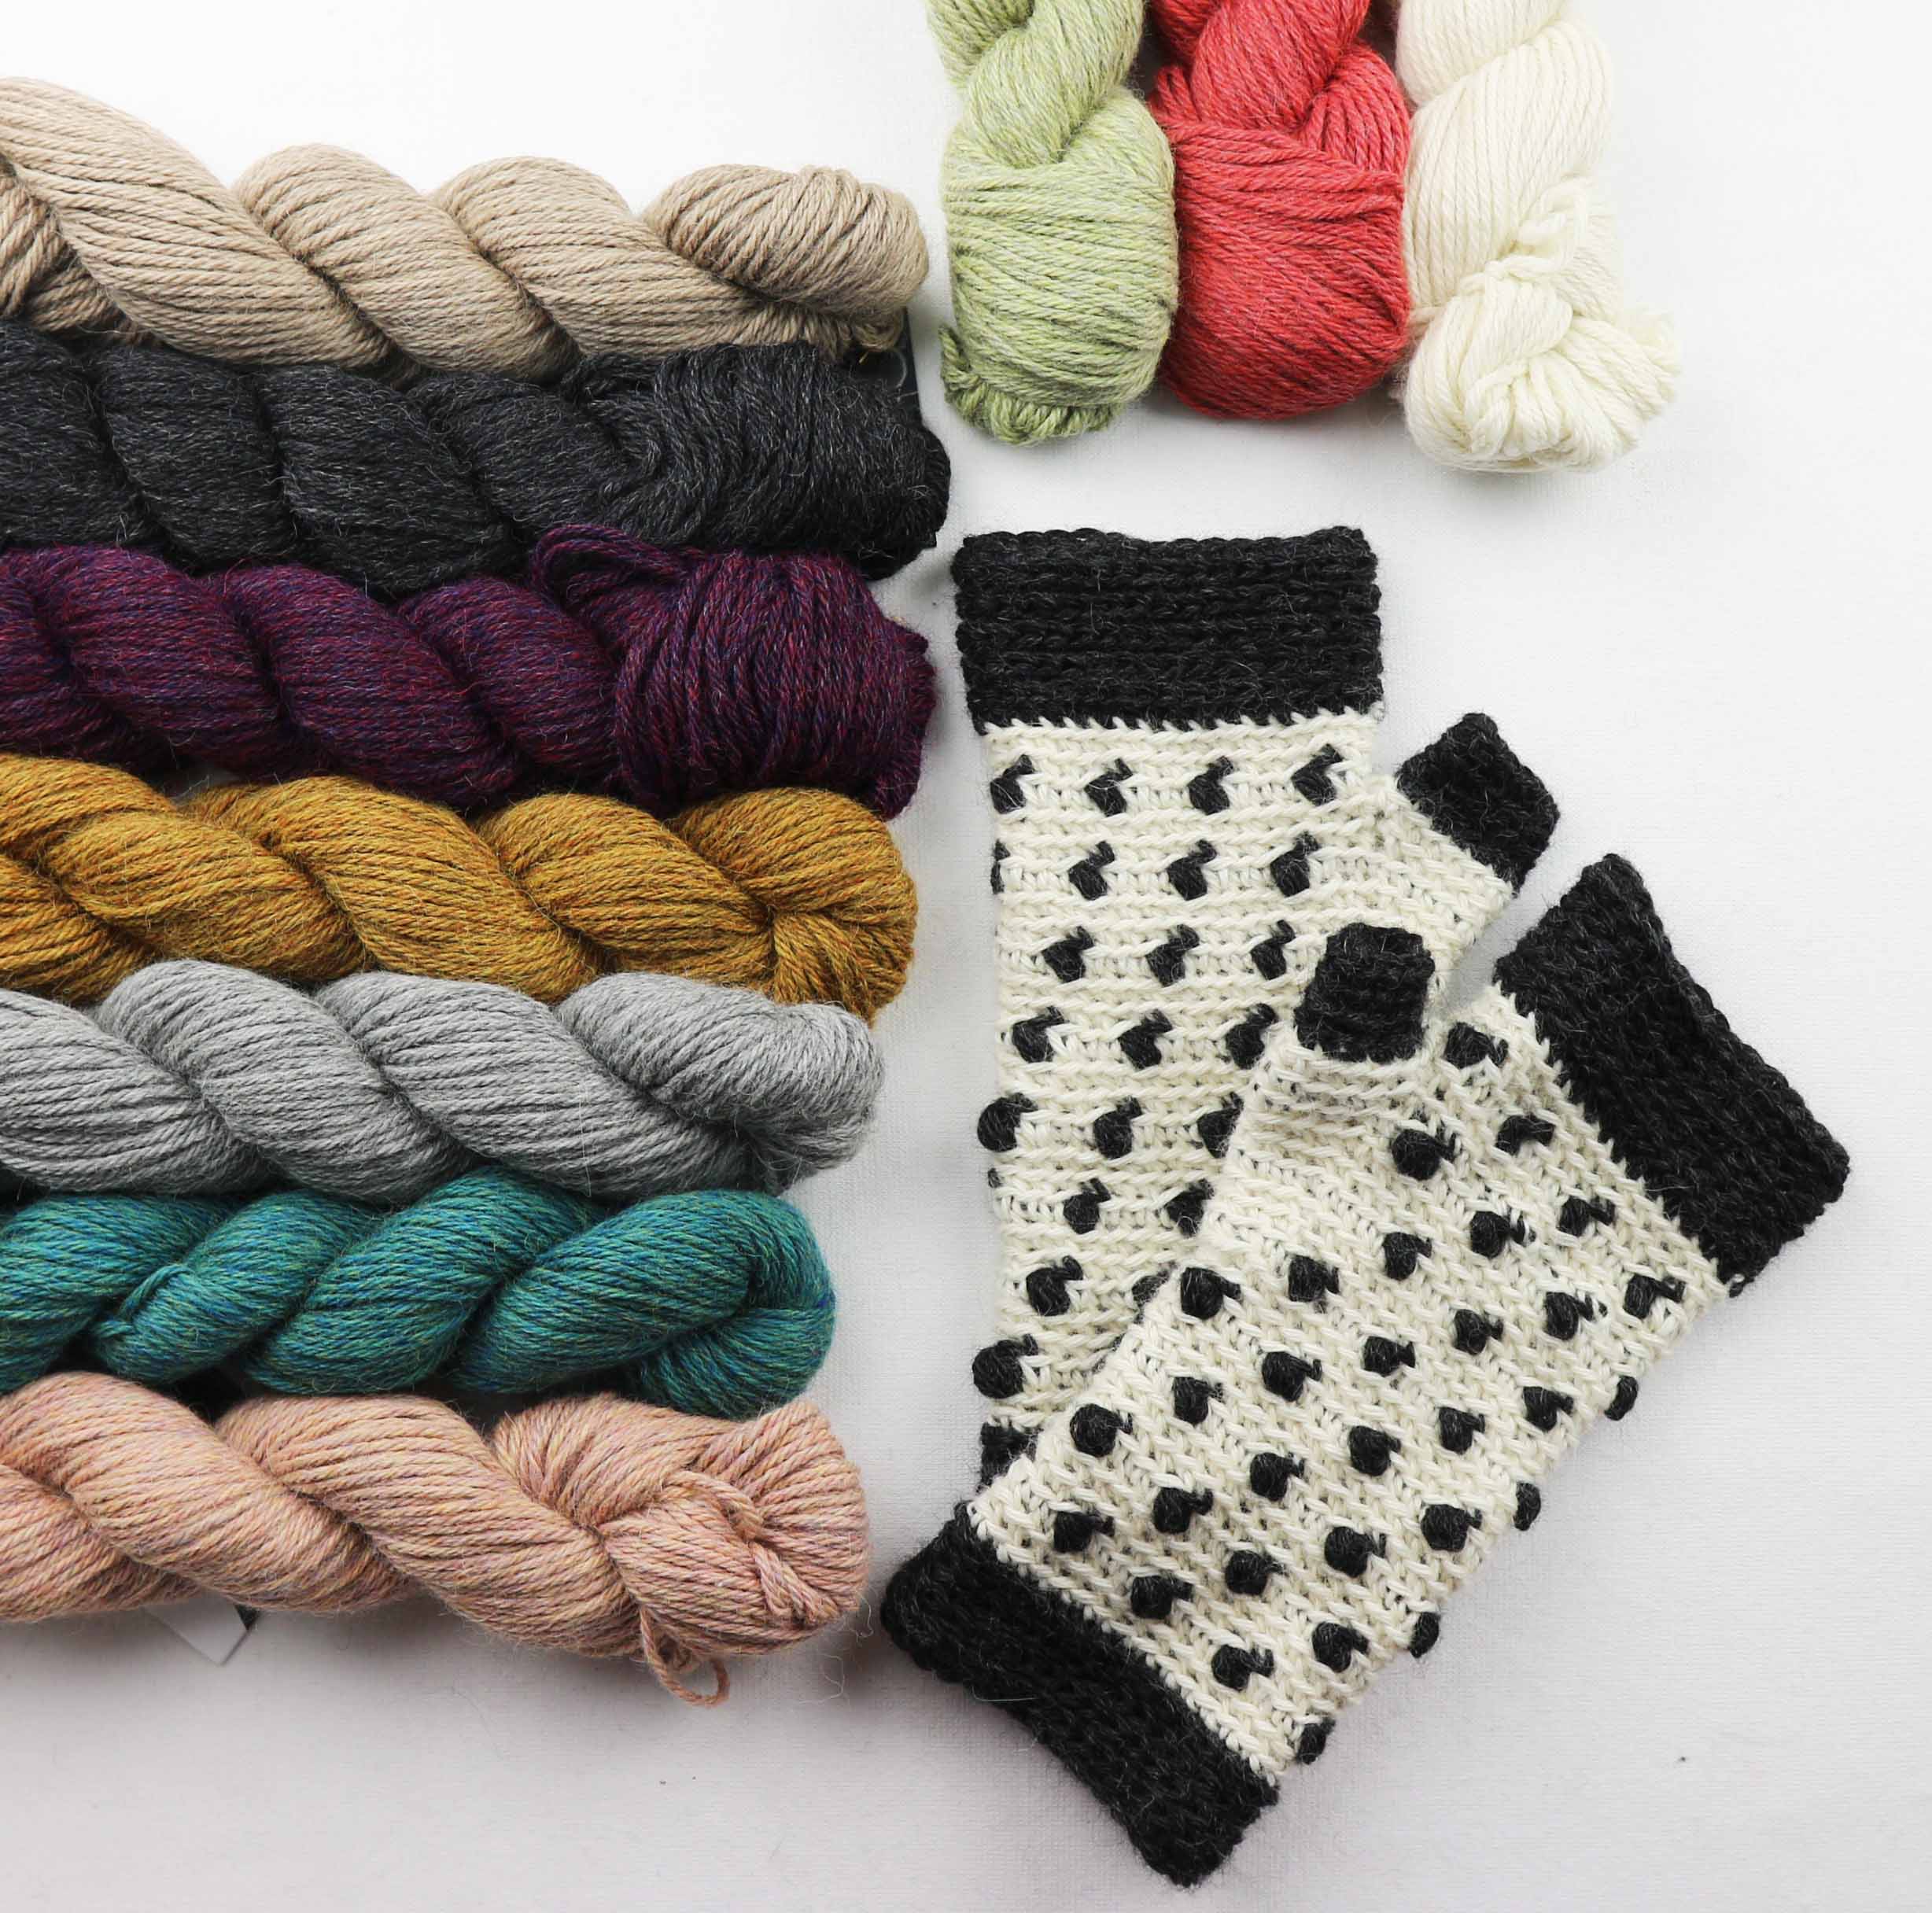 Tutorial Cómo Tejer Mitones a Crochet Muy Fácil y Rápido Paso a